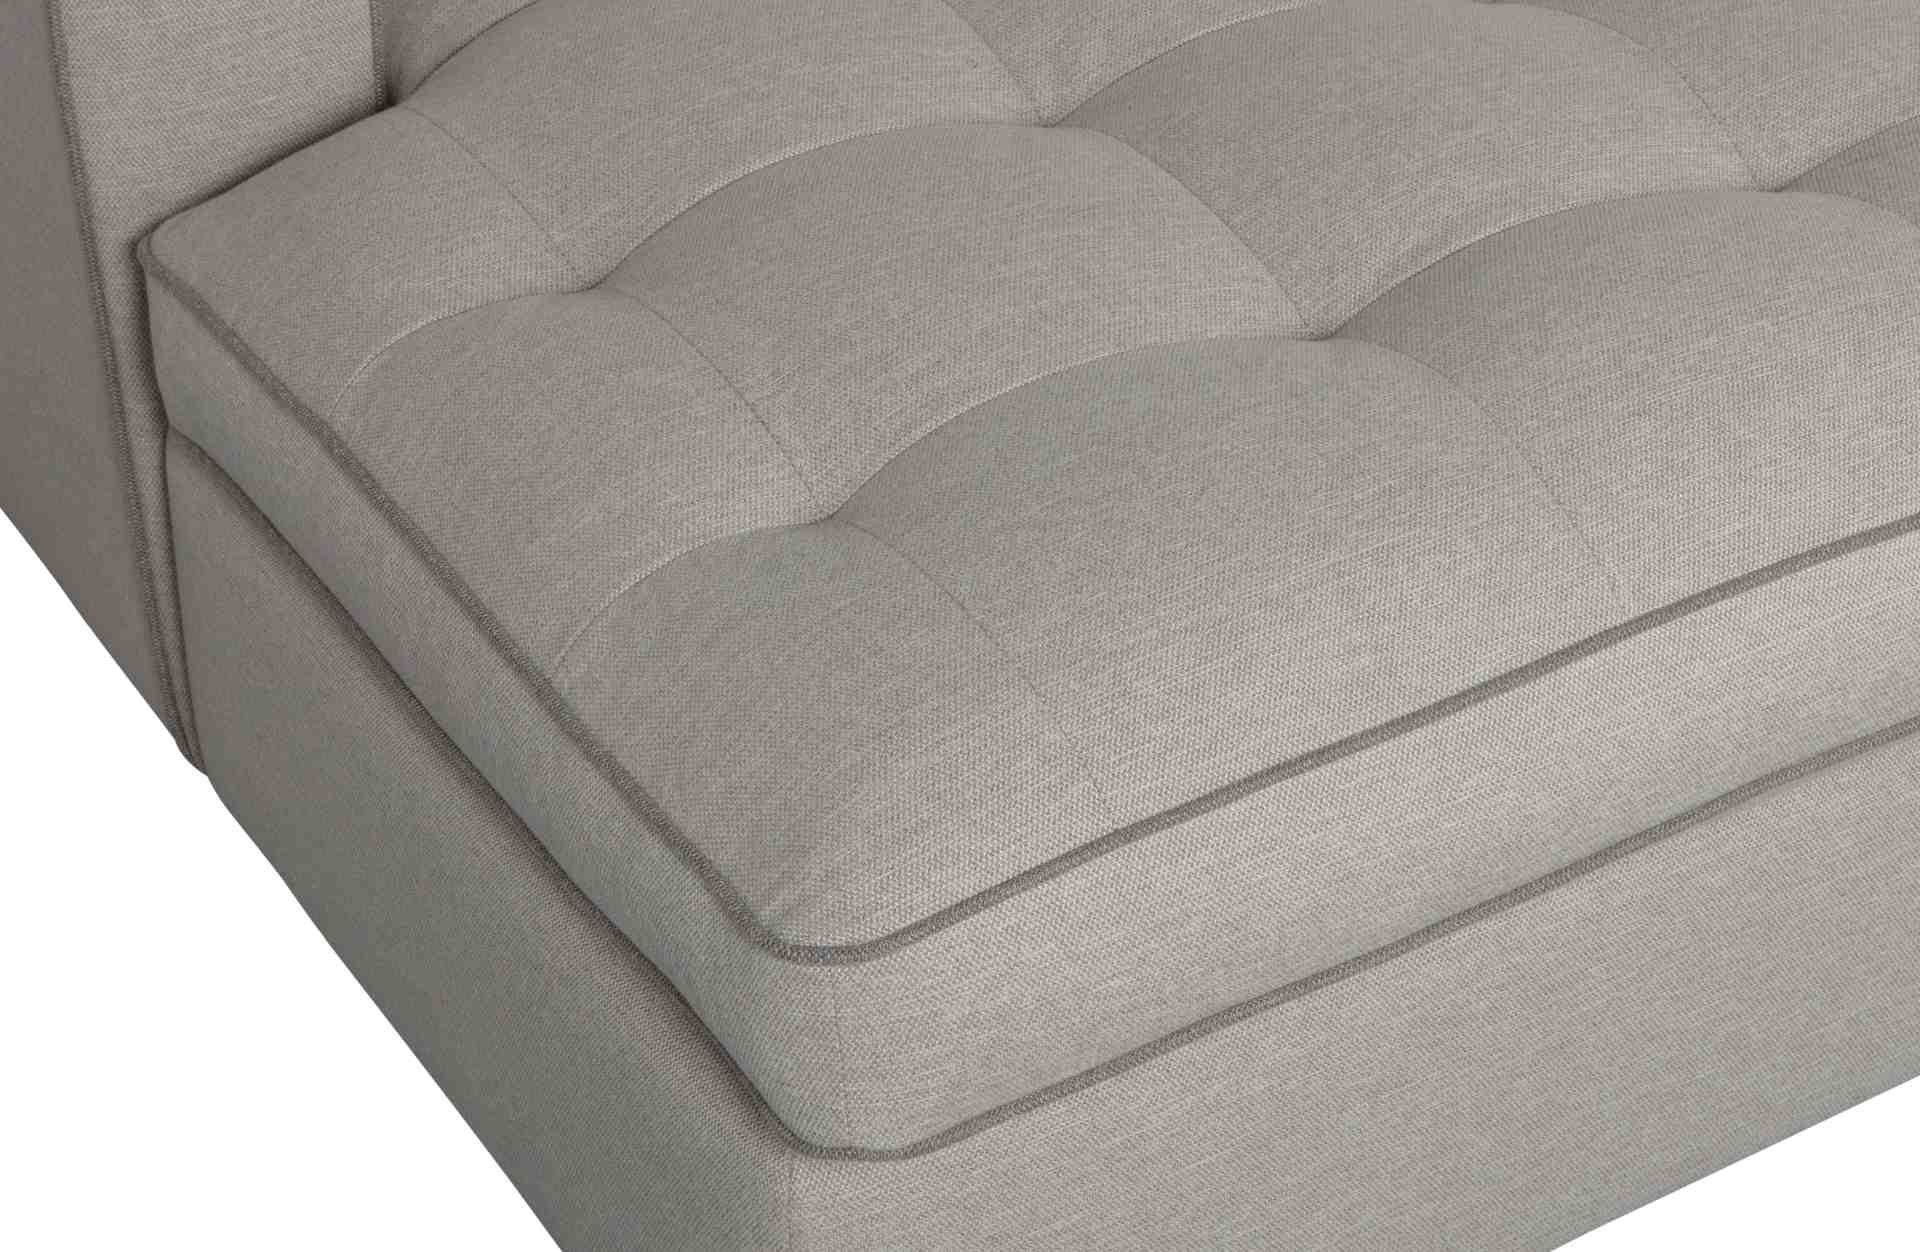 Das Ecksofa Lisa überzeugt mit seinem klassischen Design. Gefertigt wurde es aus Kunststofffasern, welche einen einen grauen Farbton besitzen. Die Ausführung des Sofas ist Links. Die Sitzhöhe beträgt 51 cm.